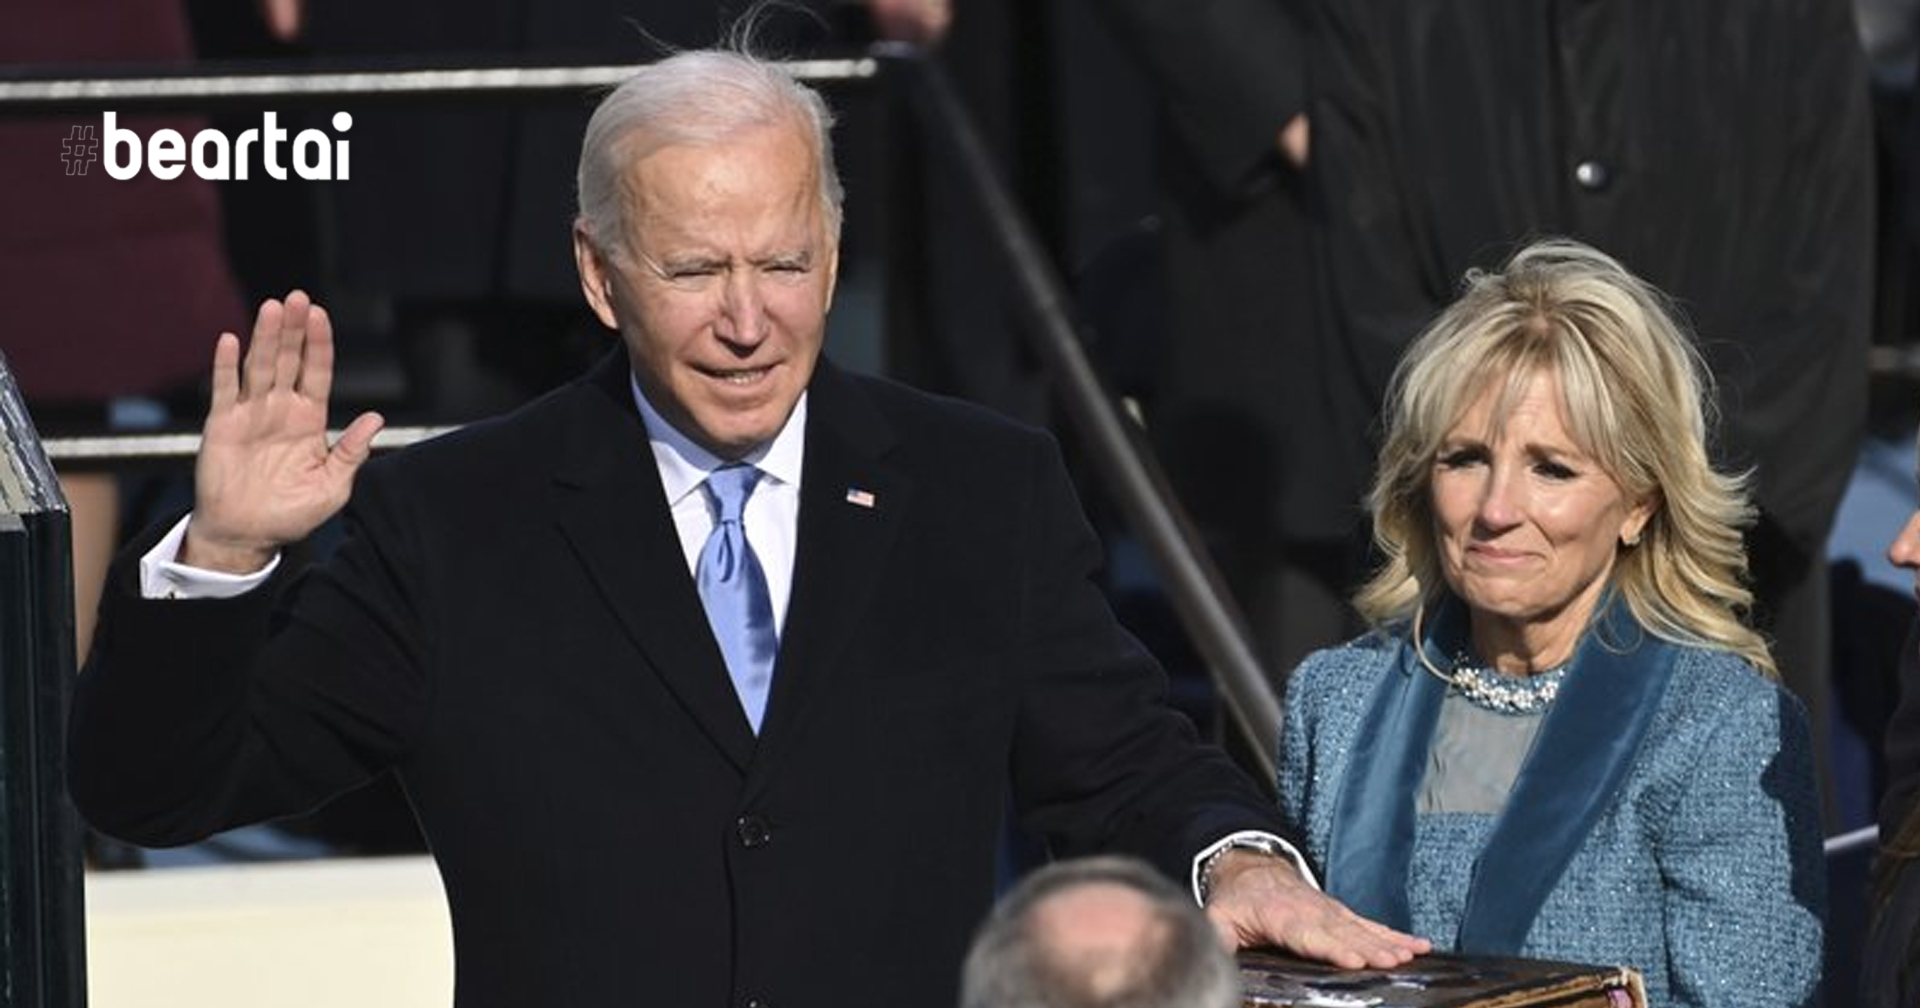 Joe Biden เข้าพิธีสาบานตนเป็นประธานาธิบดีคนที่ 46 ของสหรัฐอเมริกาอย่างราบรื่น